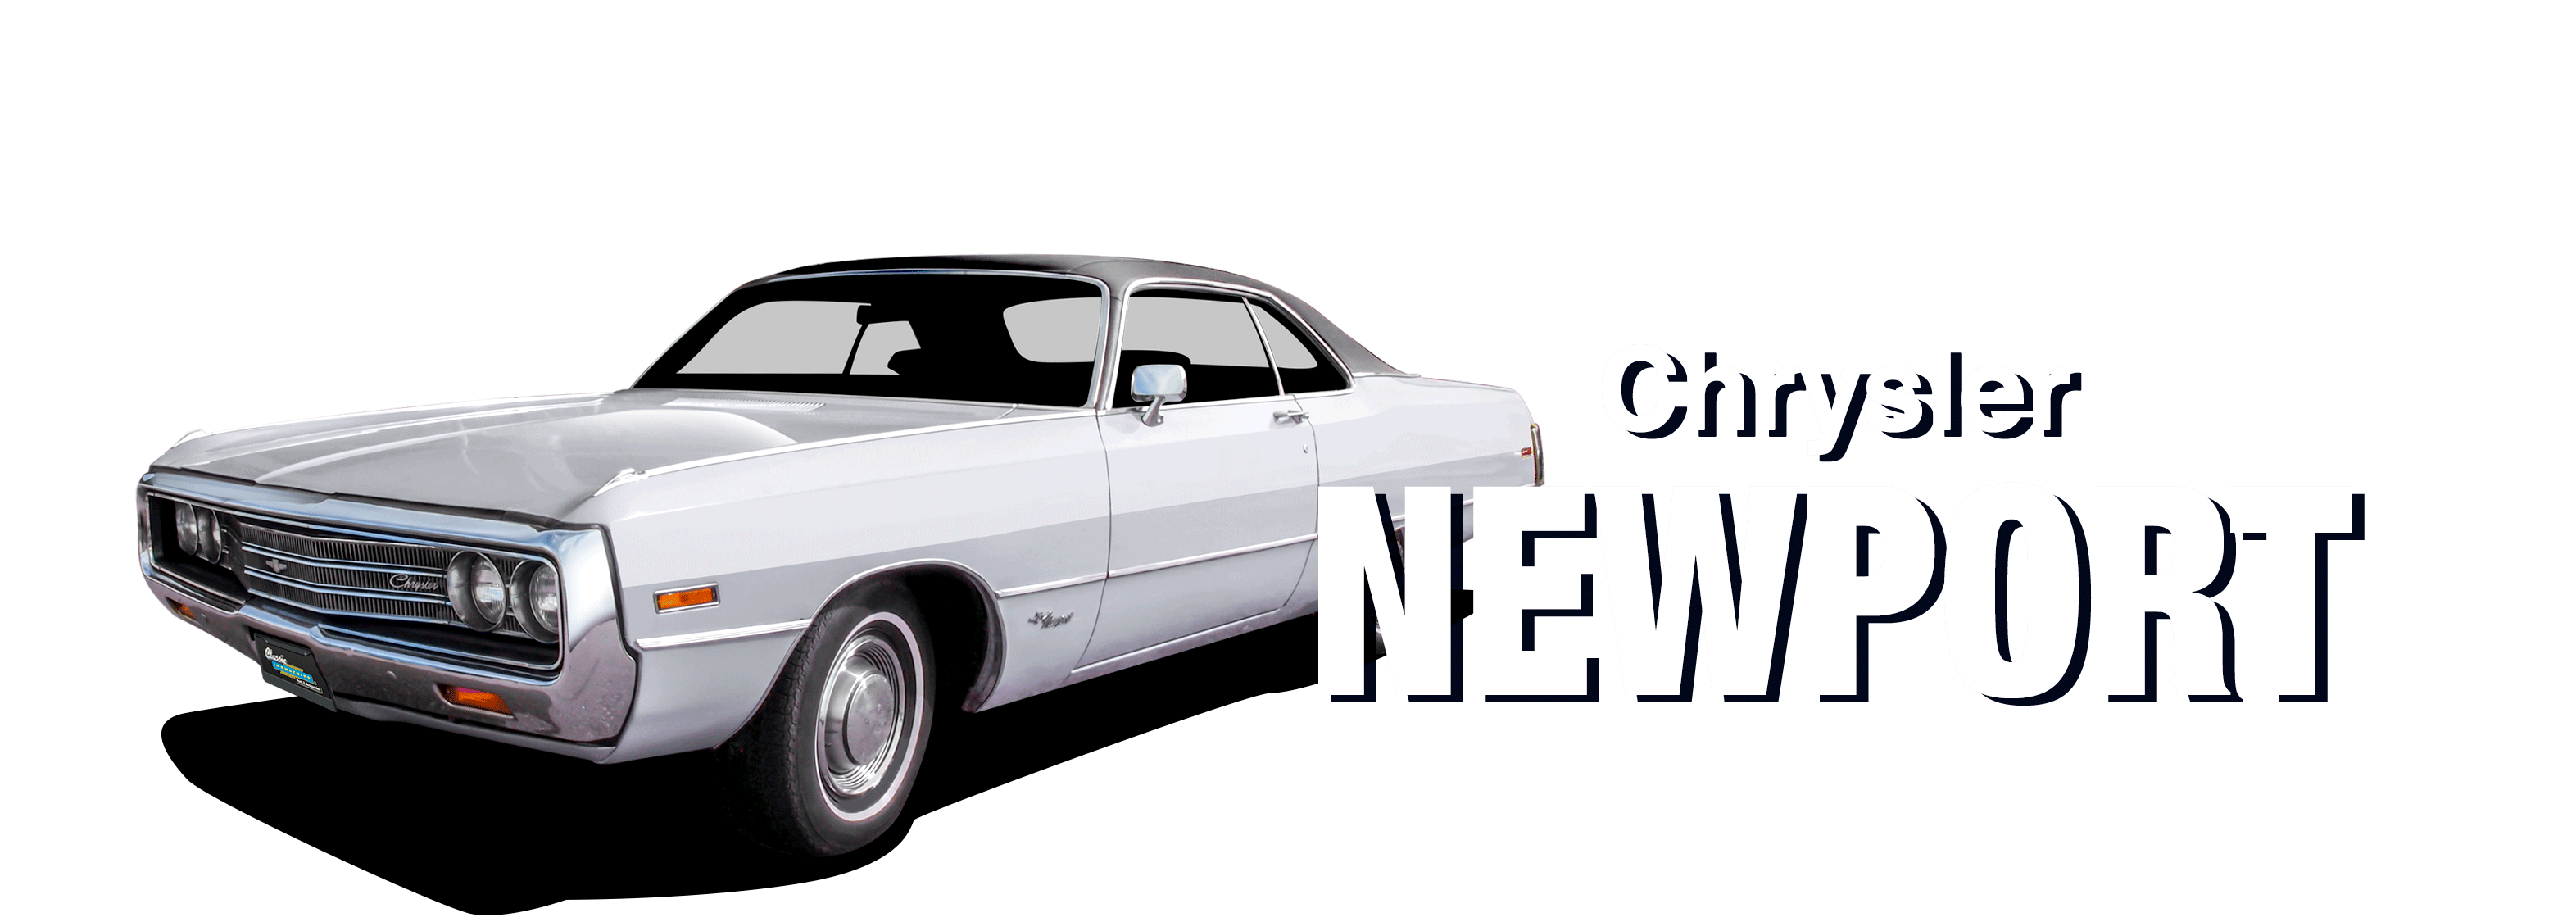 1950-1978 Chrysler Newport